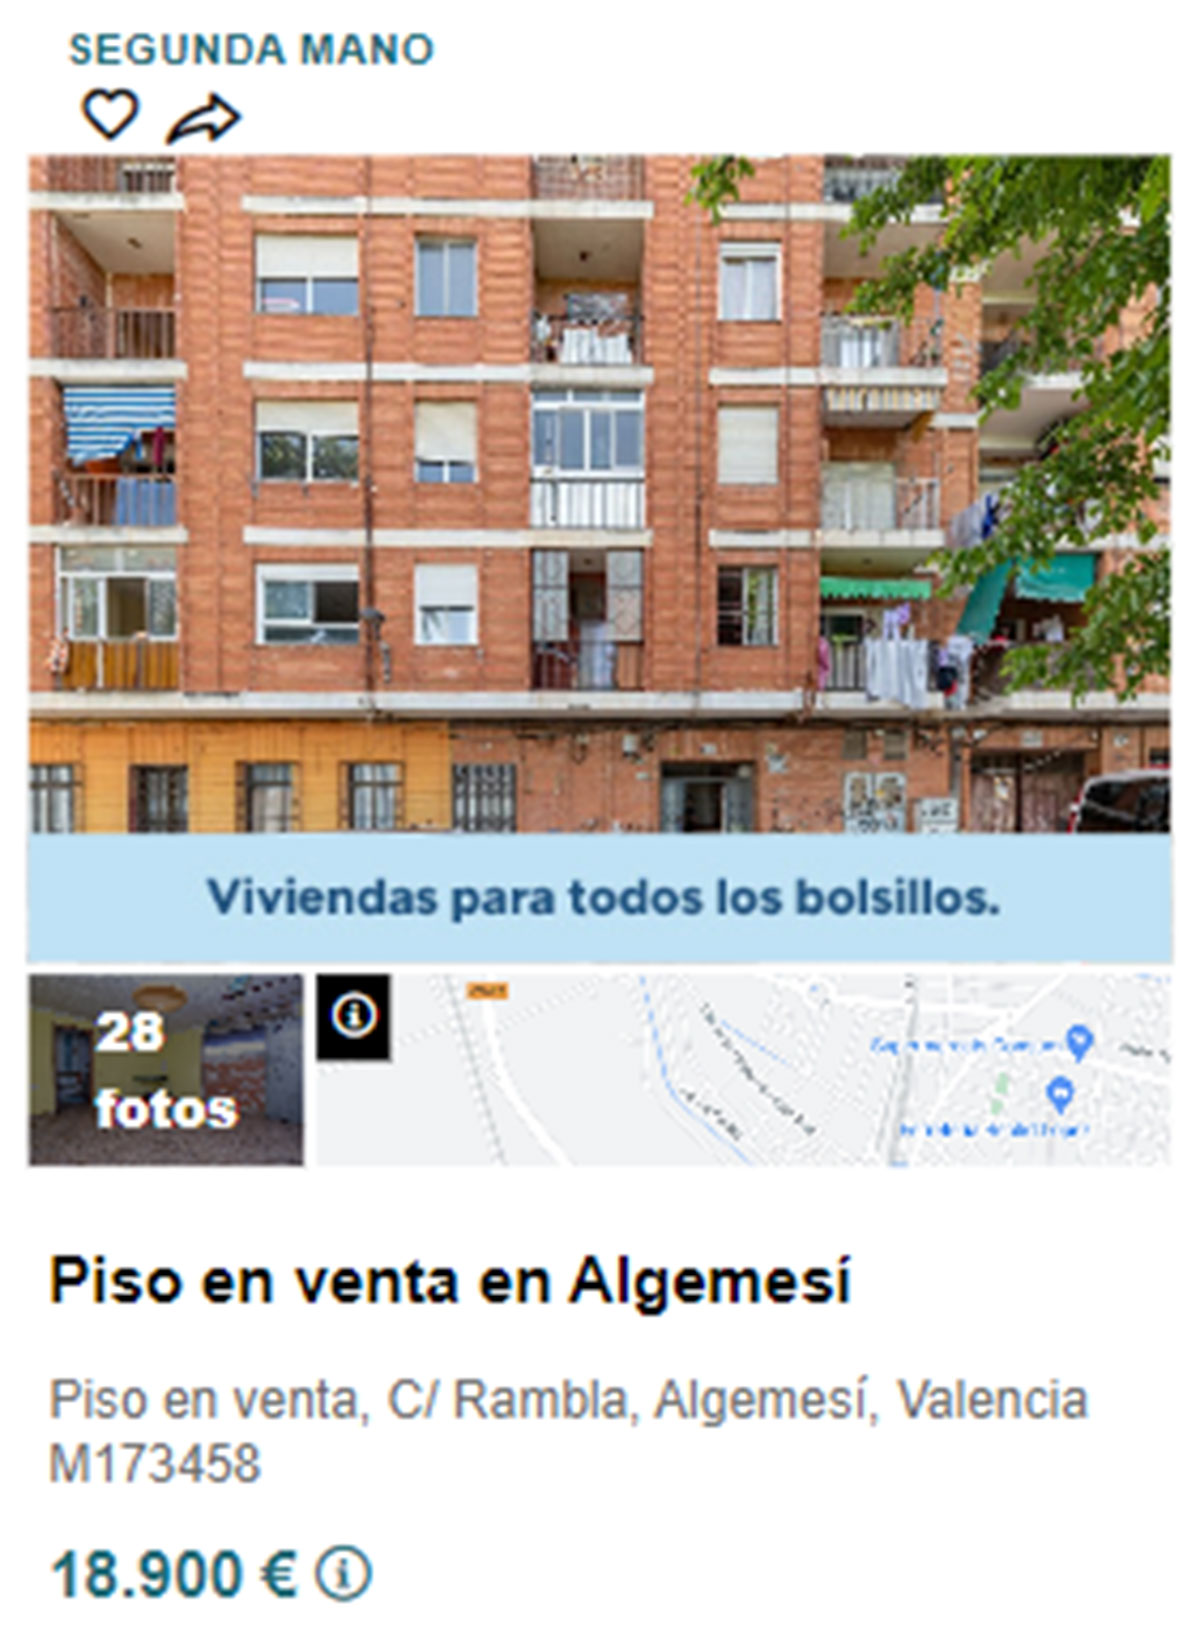 Piso en pueblos de Valencia por 19.800 euros